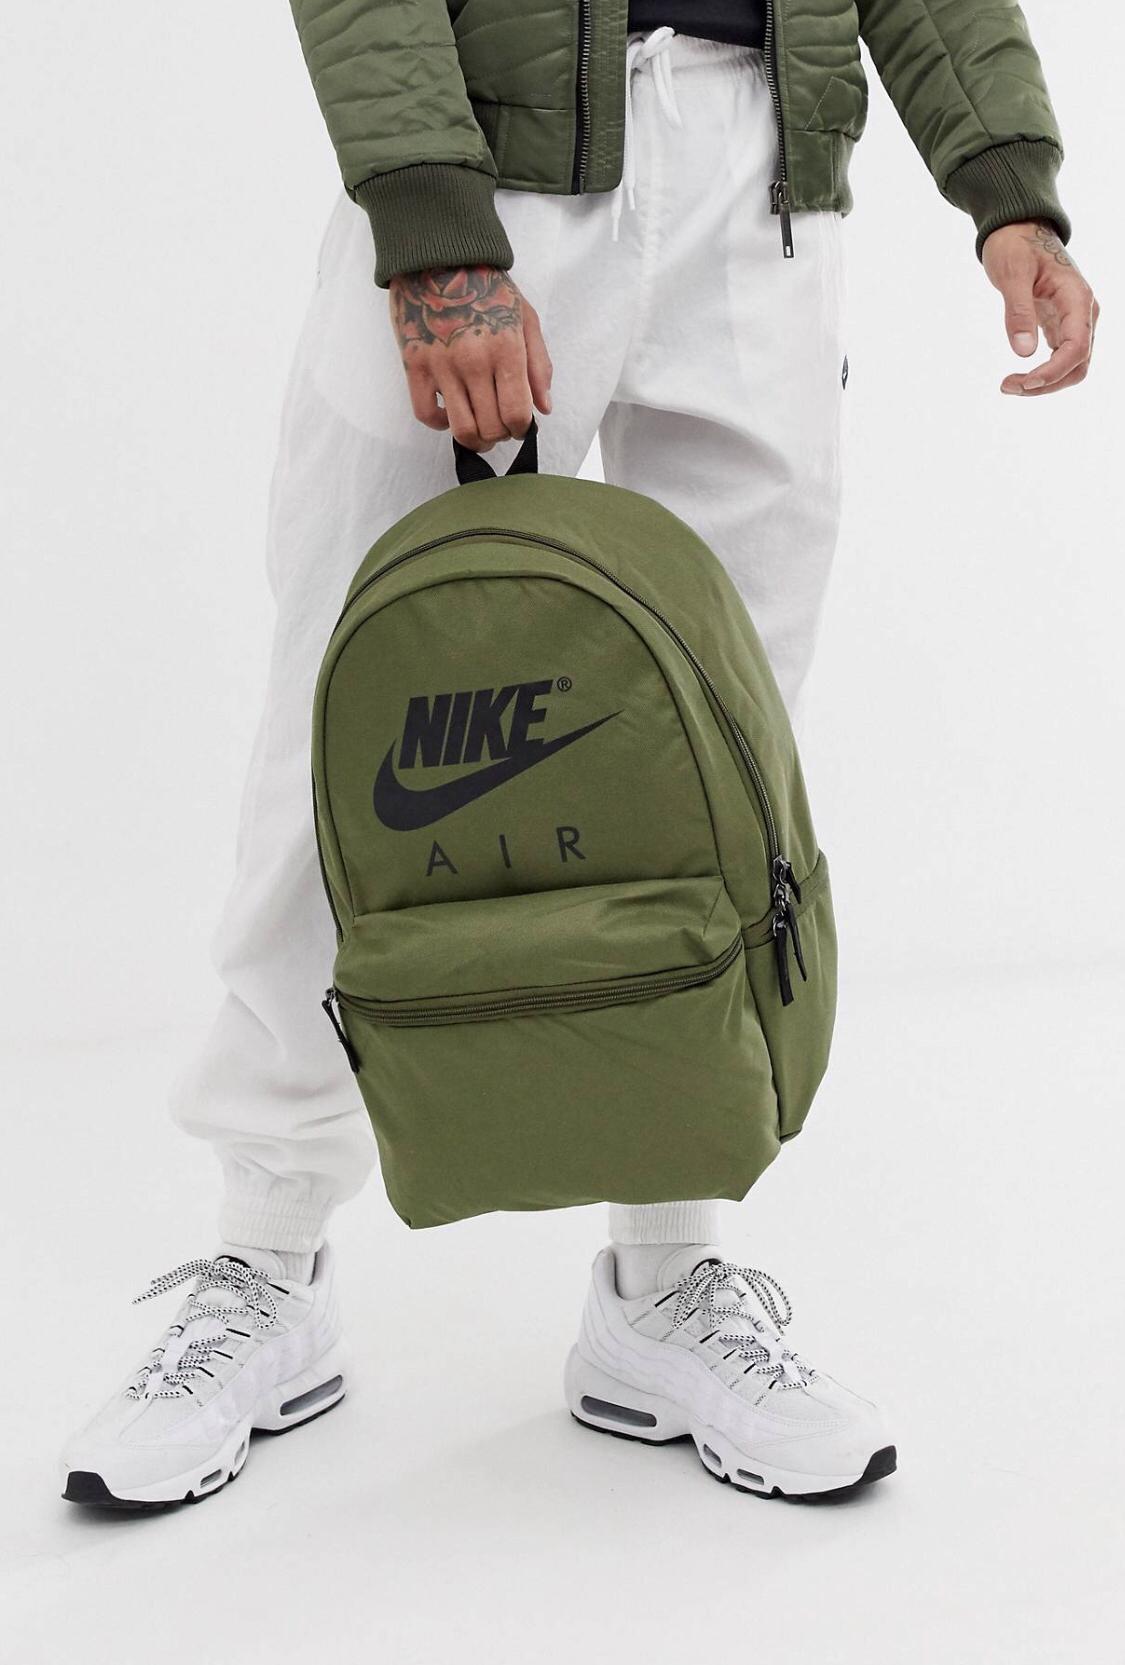 Nike Backpack. Nike Air Backpack in 